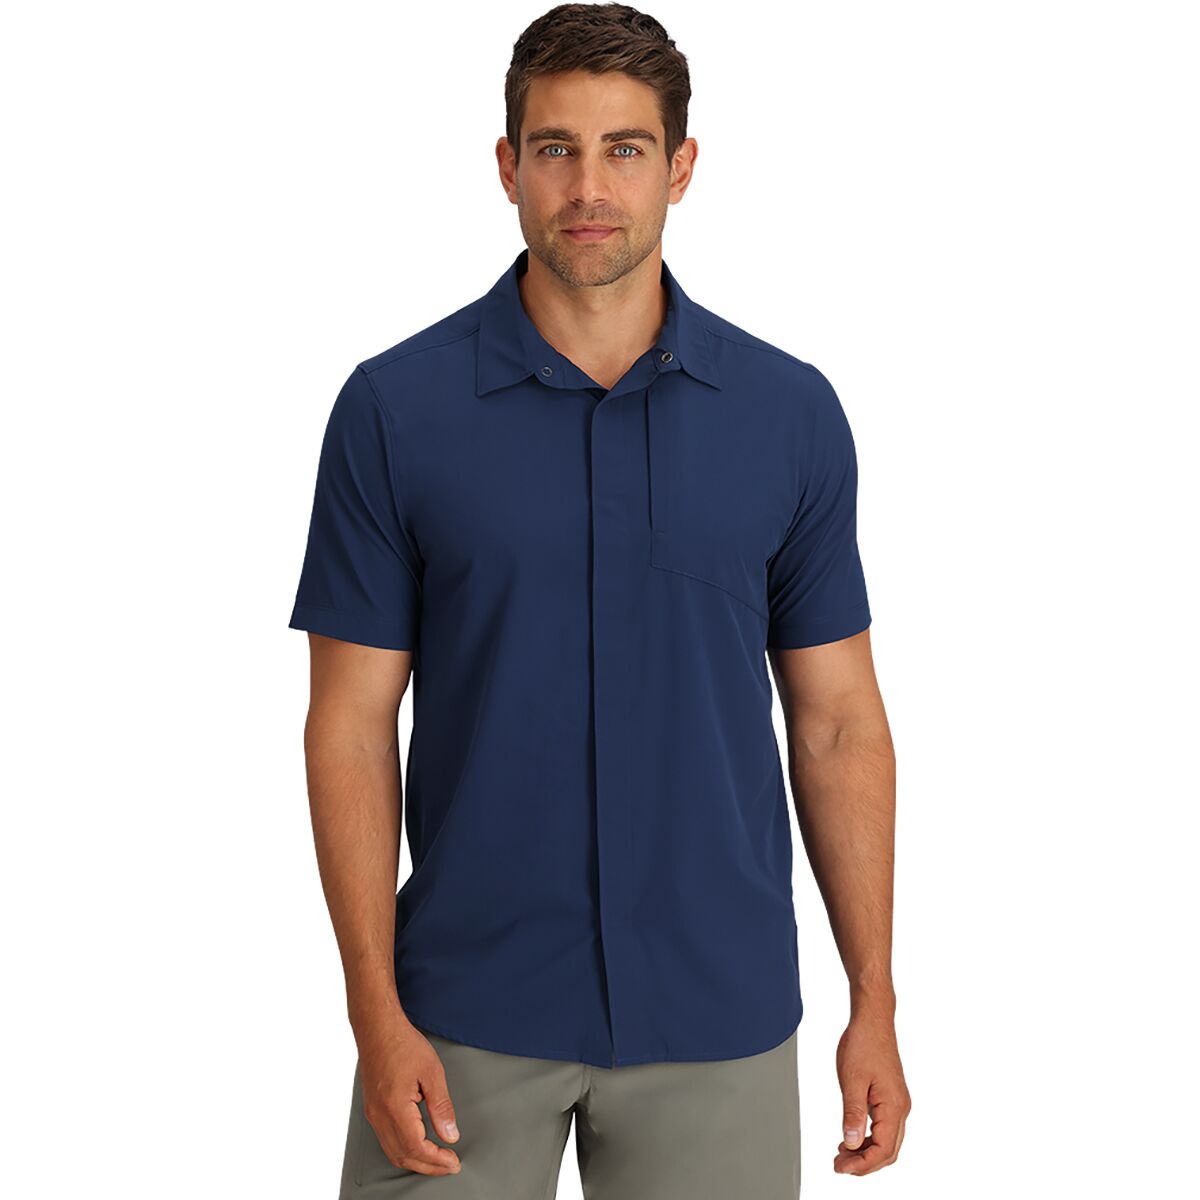 Astroman Air Short-Sleeve Shirt - Men